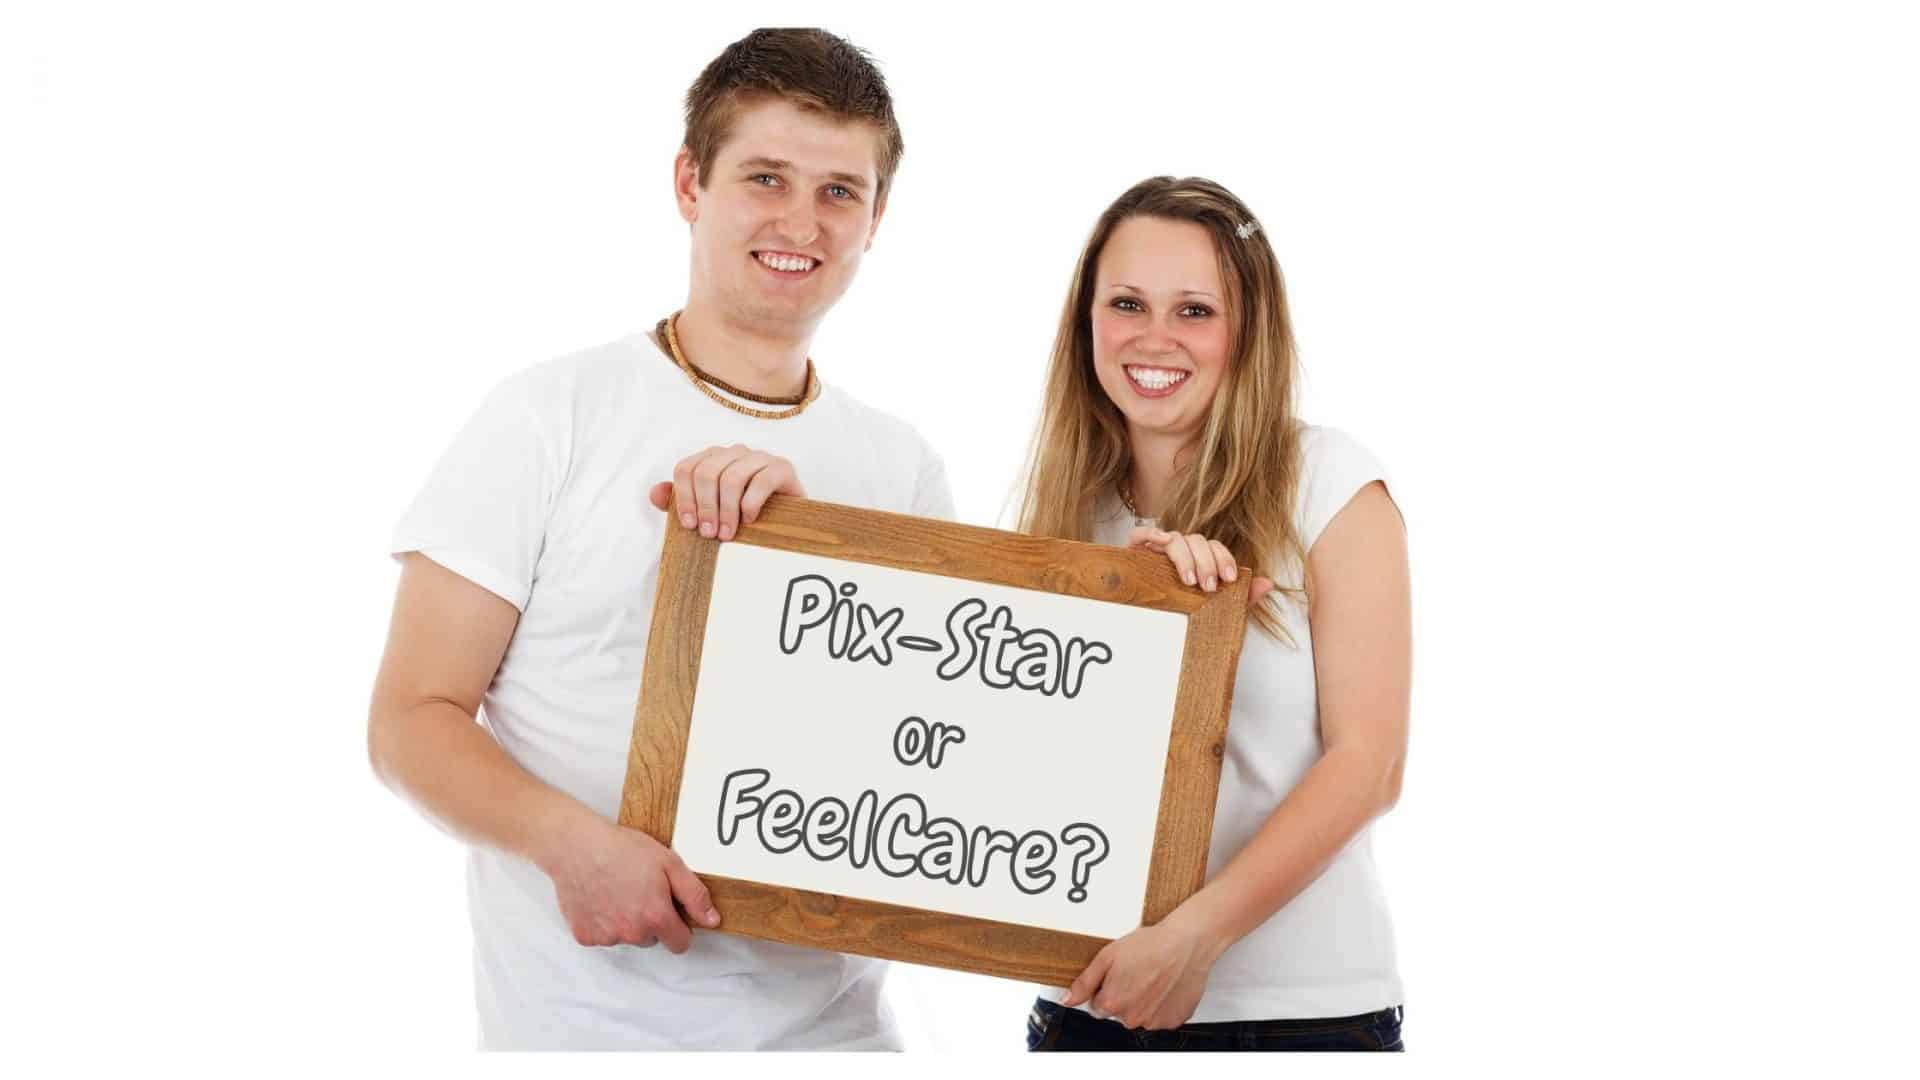 Cornici Pix-Star vs FeelCare